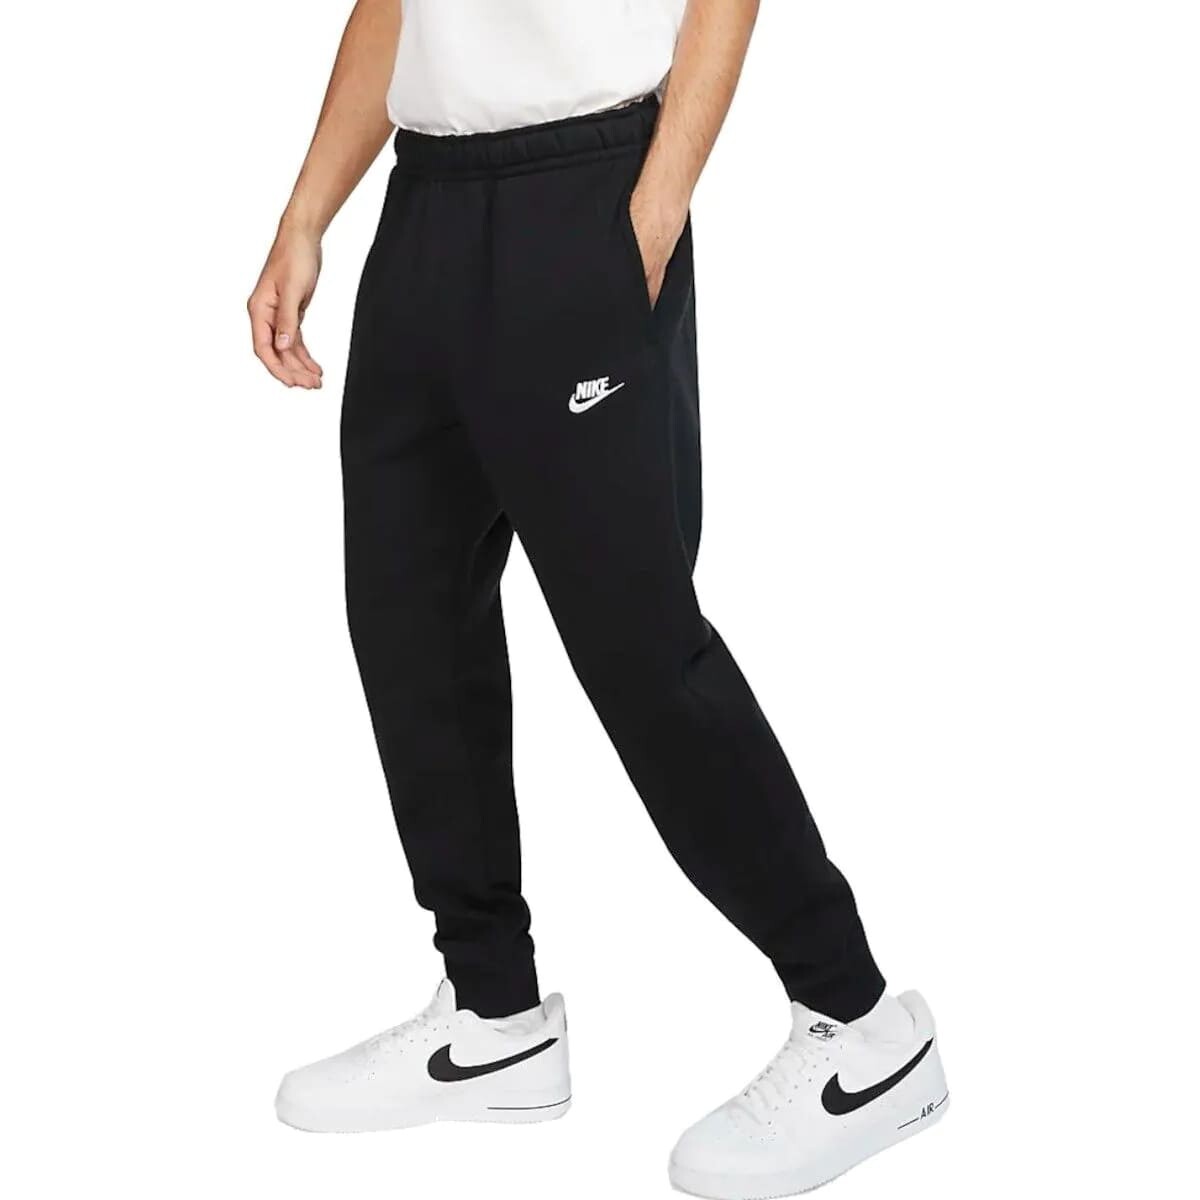 Pantalon Nike Moda Hombre Negro Clasico Club Jggr - S/C 